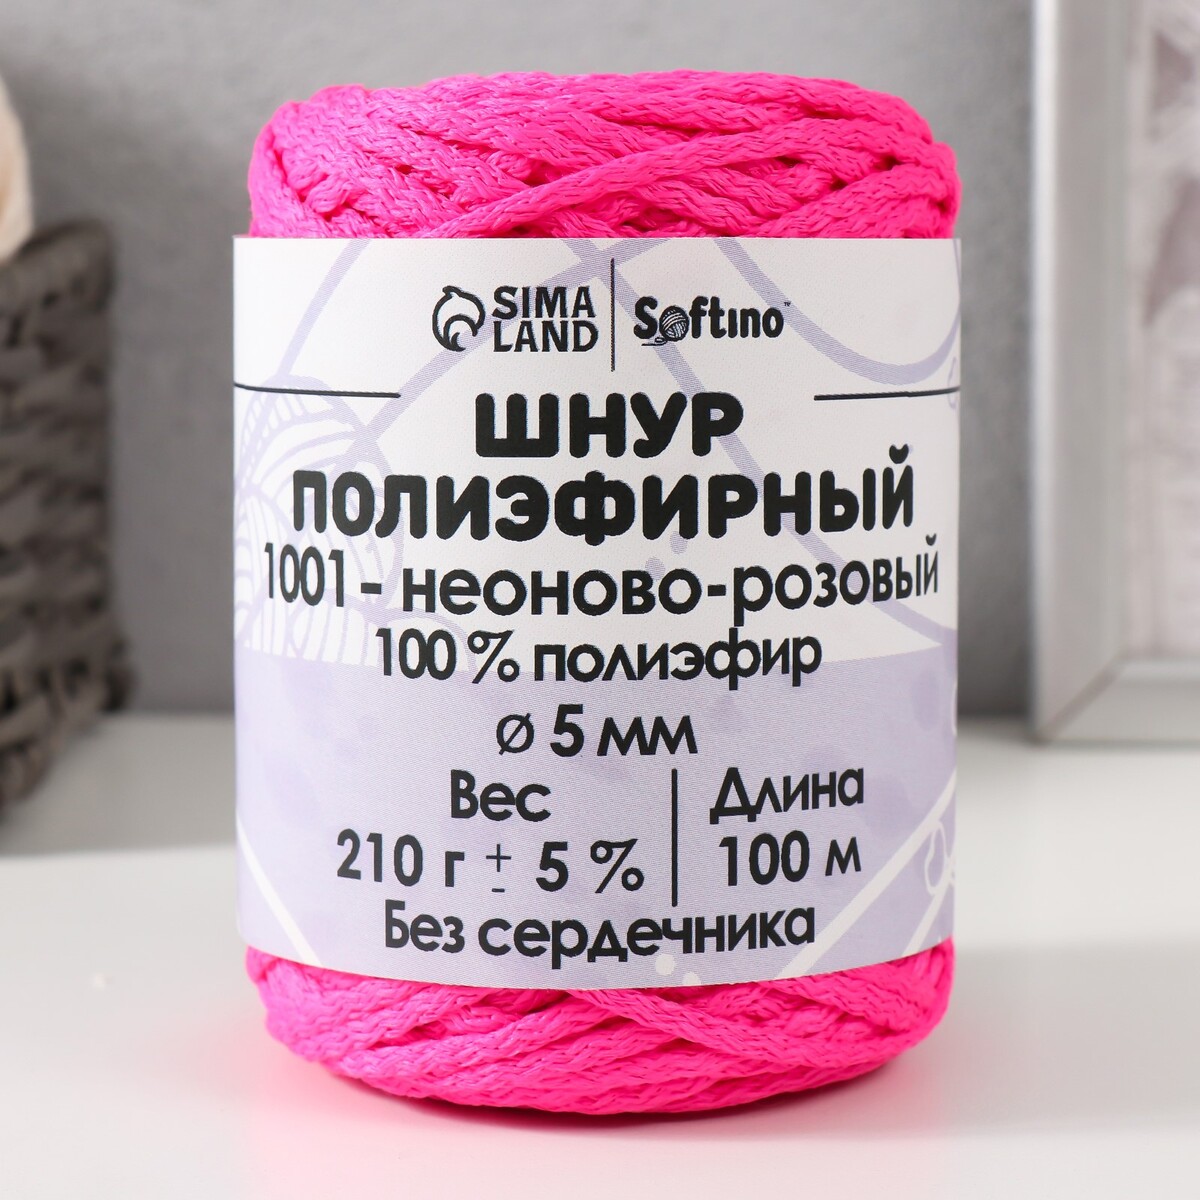 Шнур полиэфирный без сердечника 5 мм 100м/210г (+/- 5%) неоново-розовый-1001 шнур для вязания 100% полиэфир ширина 5 мм 100м розовый